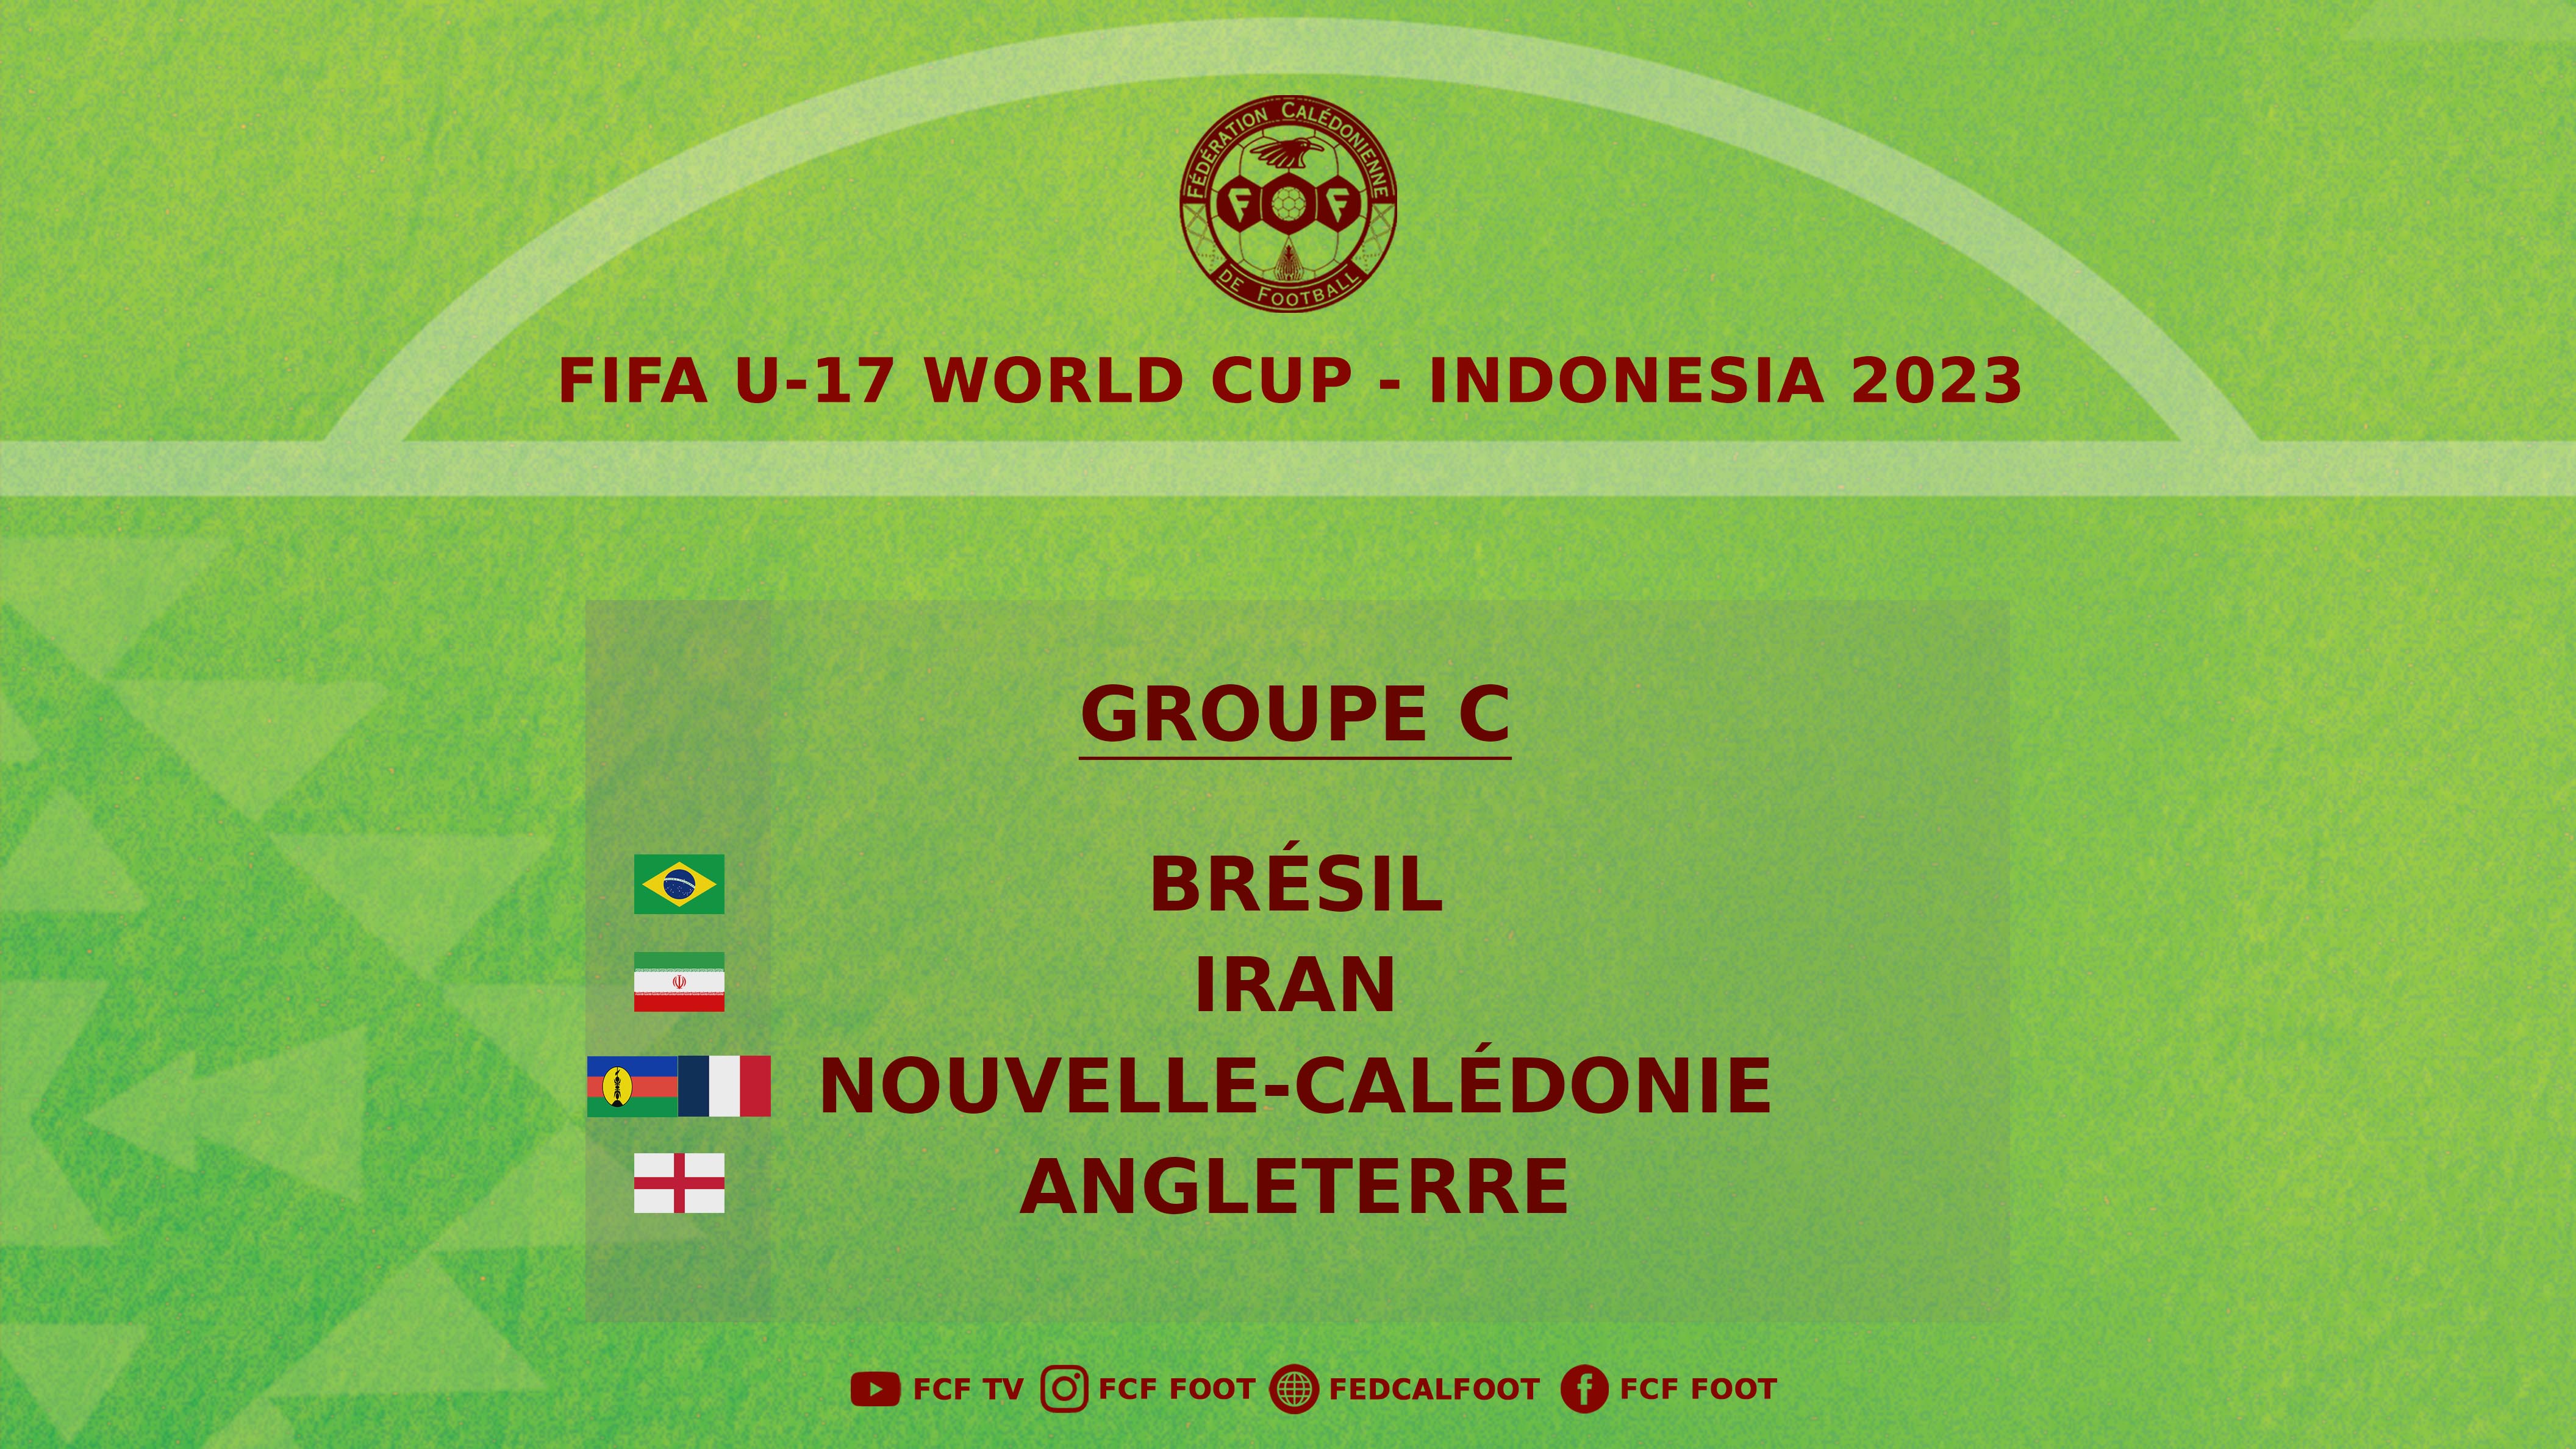 La CALEDONIE face au BRESIL, l'IRAN, et l'ANGLETERRE | COUPE DU MONDE U17 de la FIFA - Indonésie 2023 | Tirage des Groupes